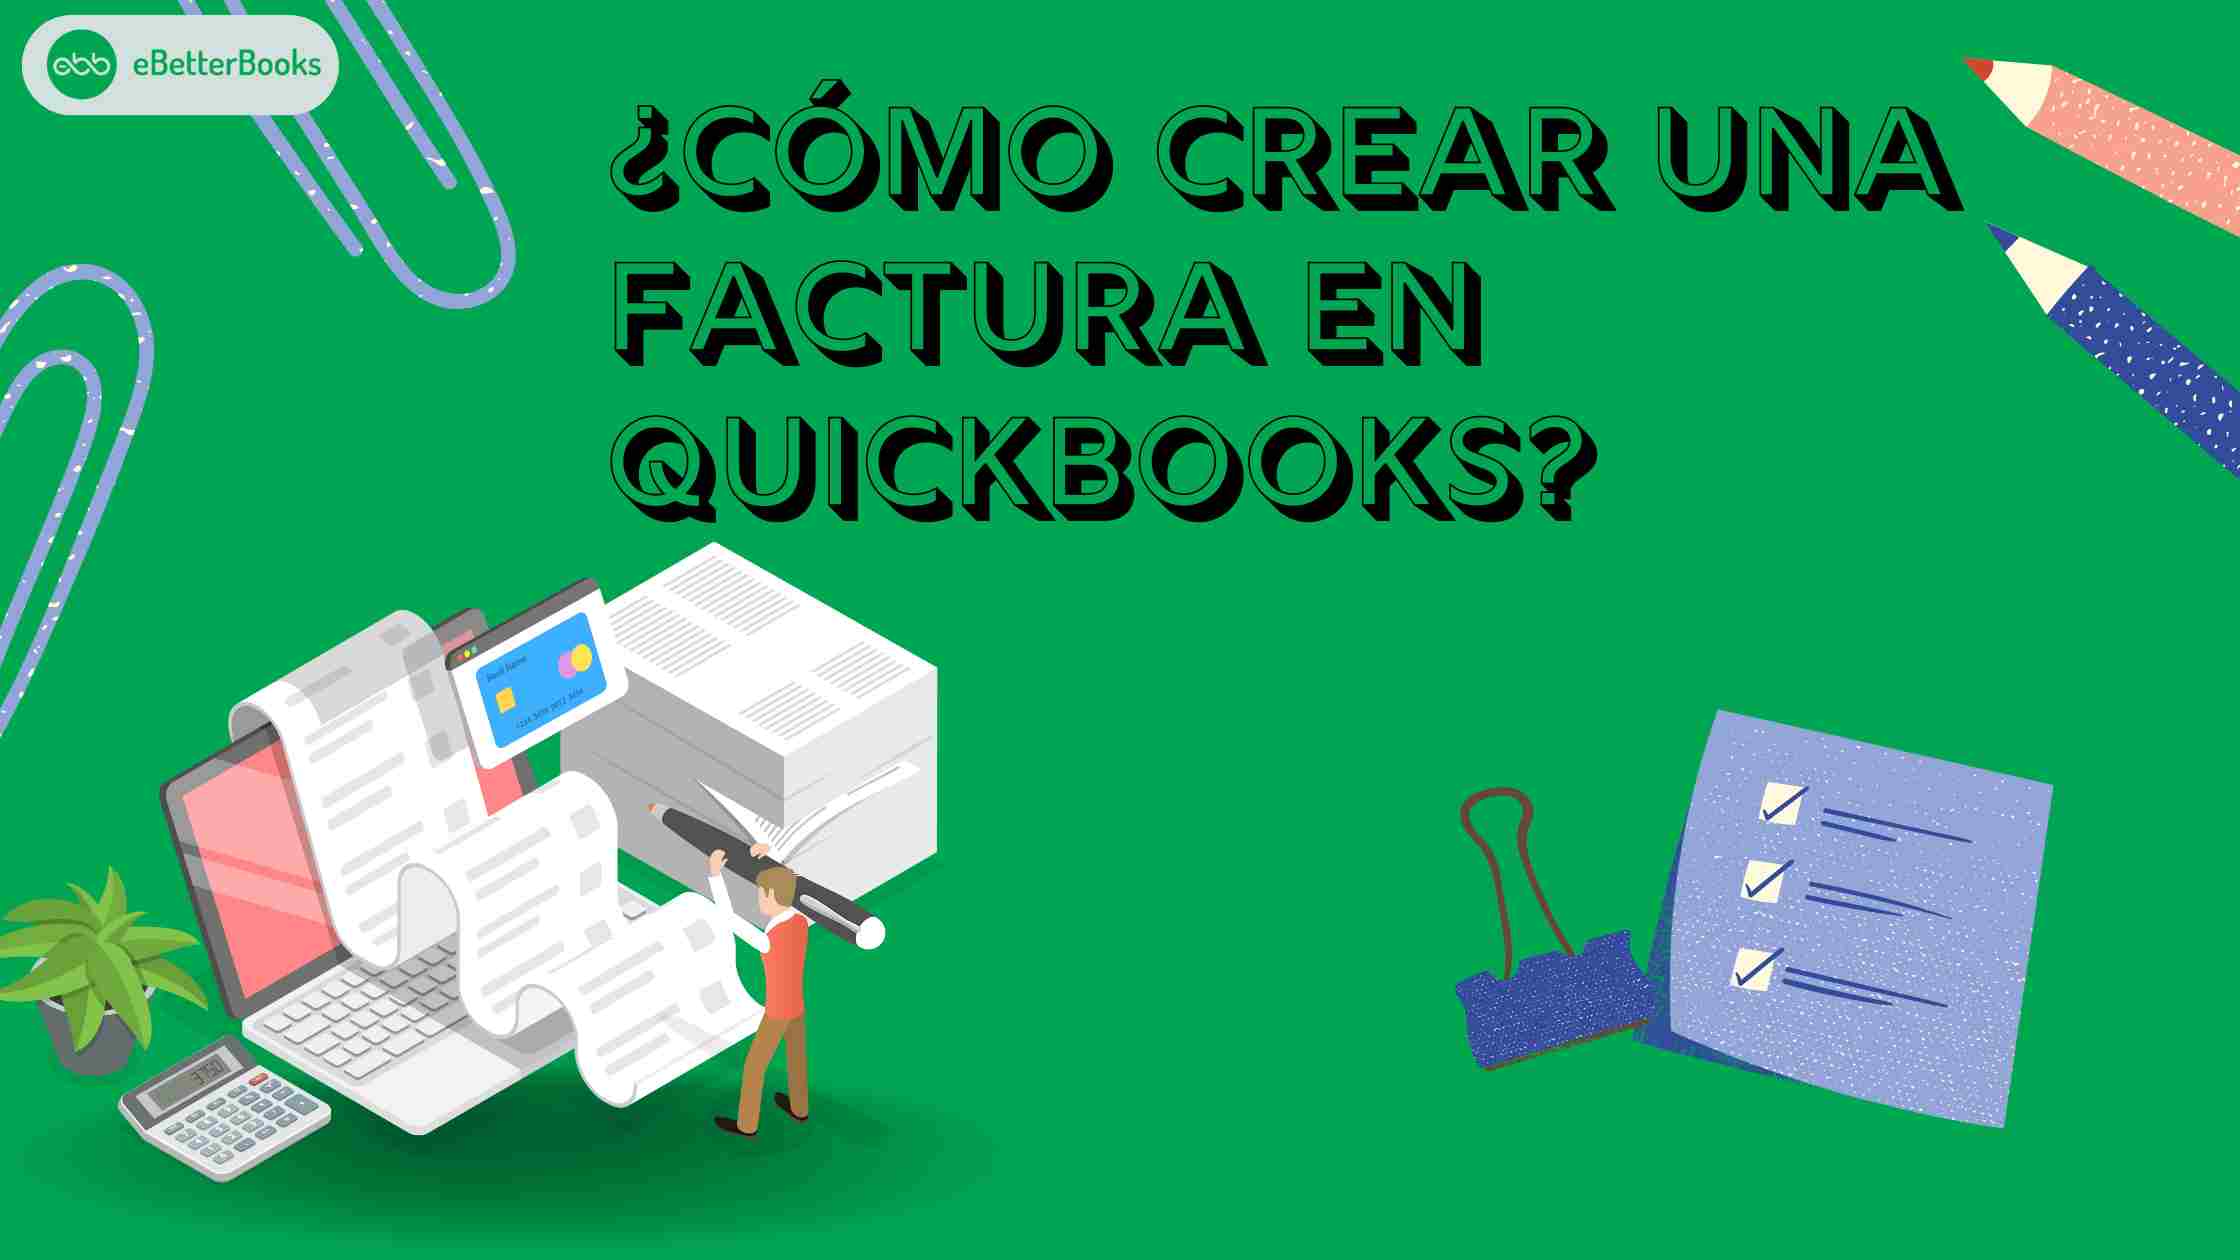 ¿Cómo crear una factura en QuickBooks?